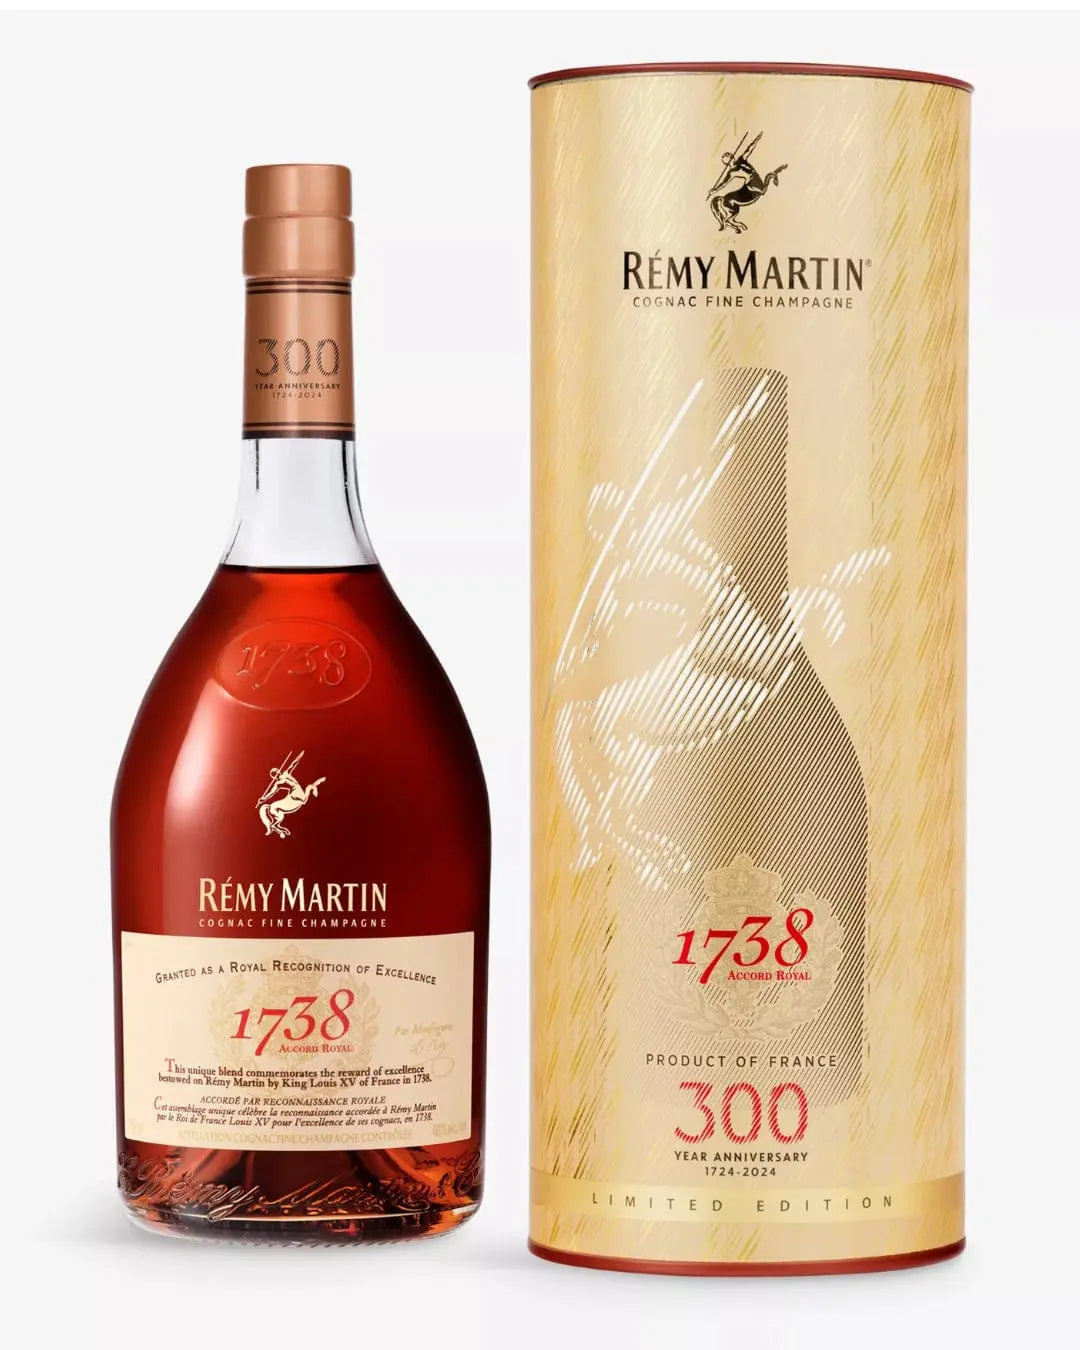 Remy Martin 1738 Accord Royal 300th Anniversary Cognac, 70 cl Cognac & Brandy